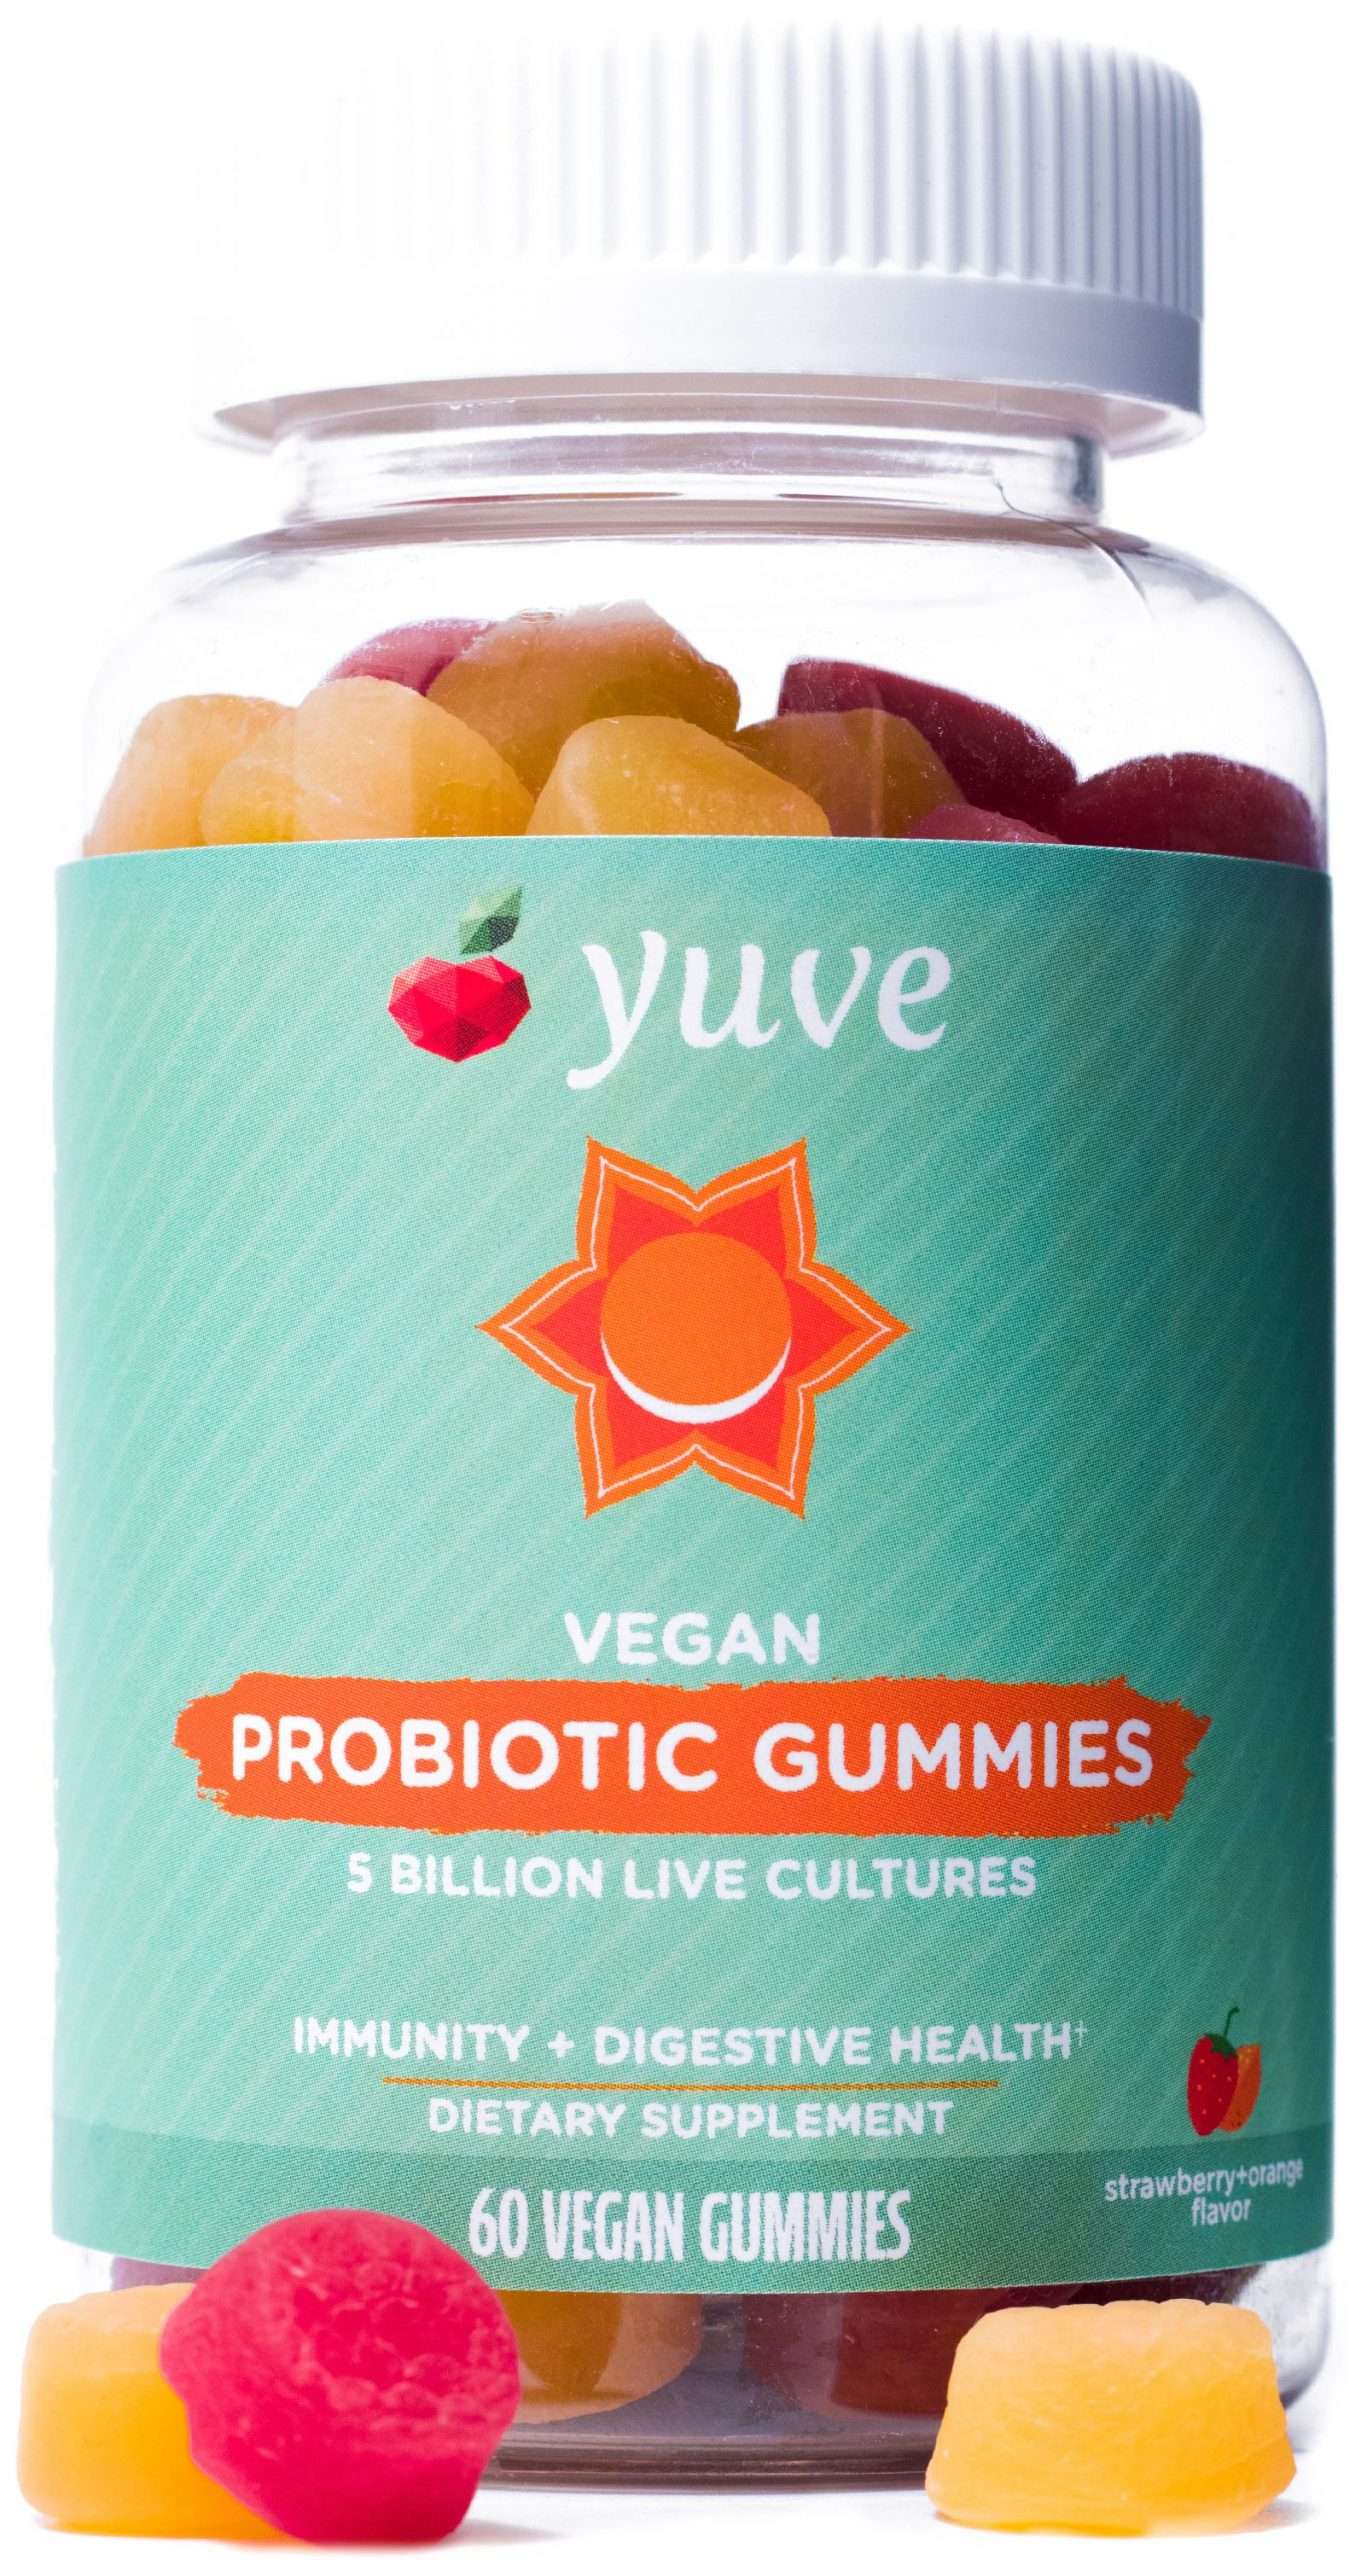 Yuve Vegan Probiotic Sugar